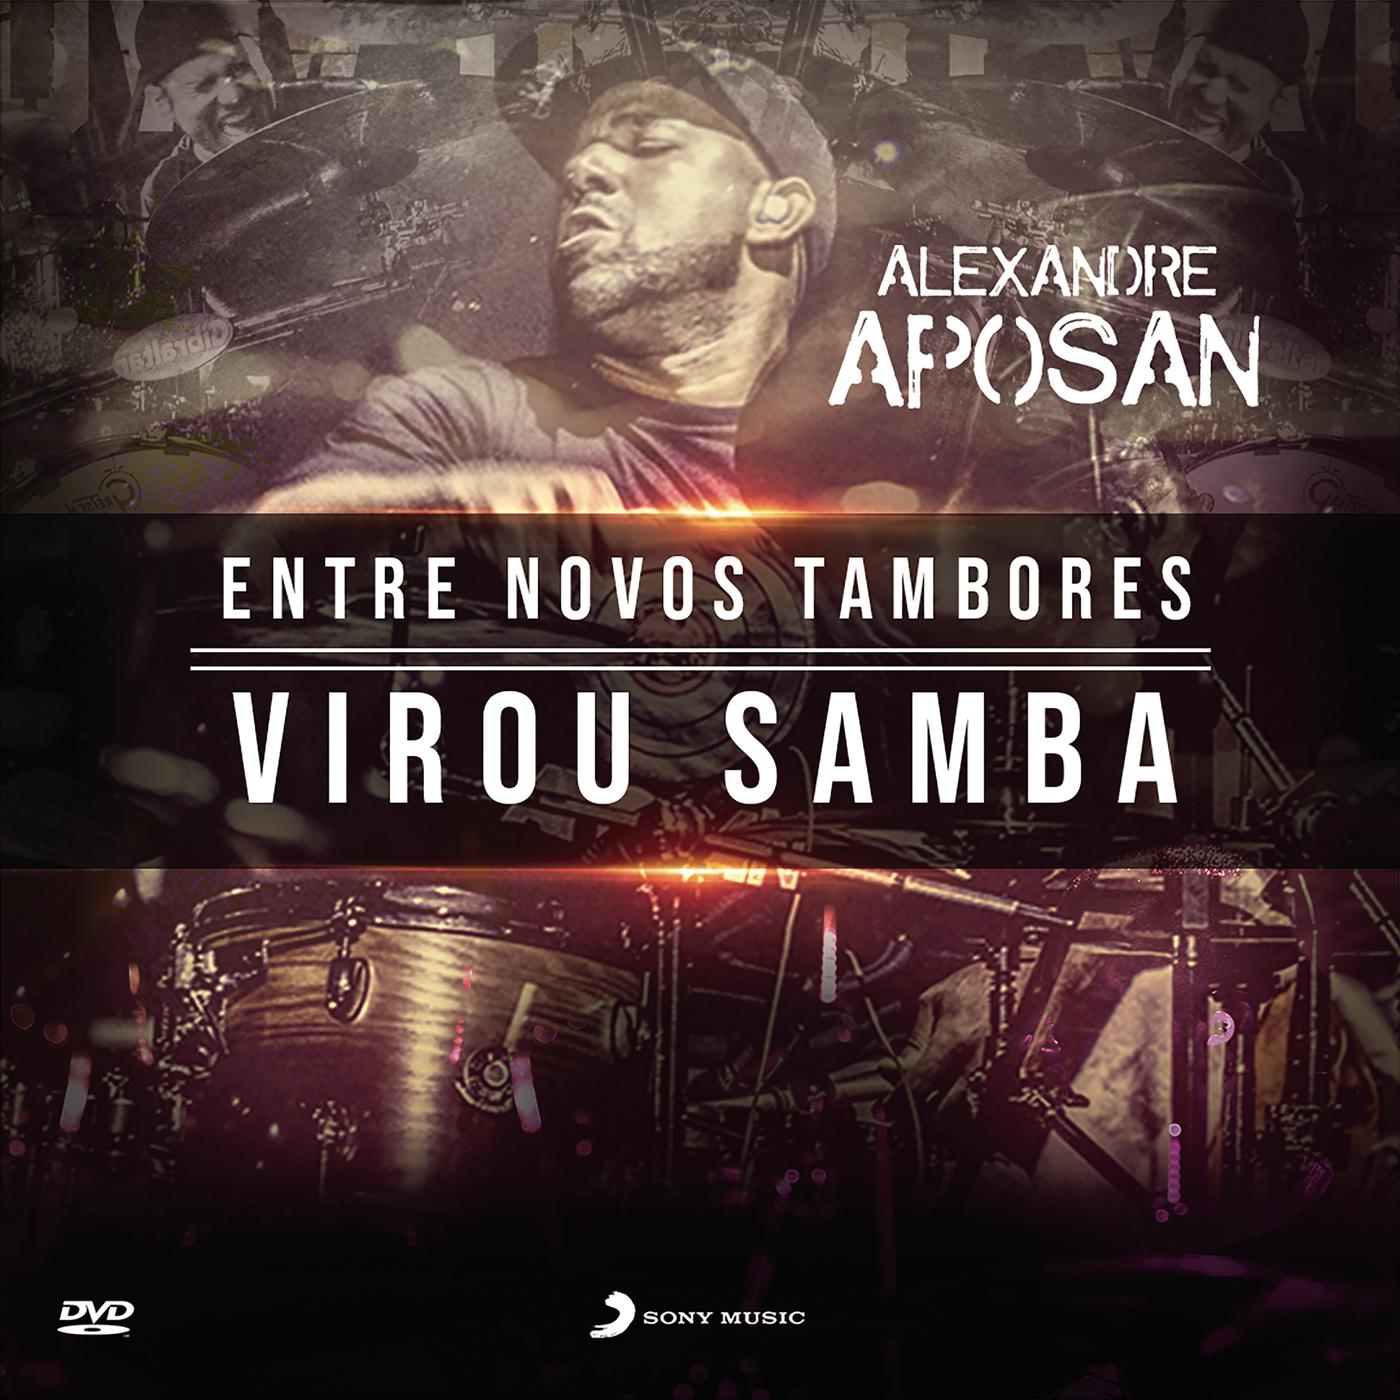 Alexandre Aposan - Virou Samba (Ao Vivo)